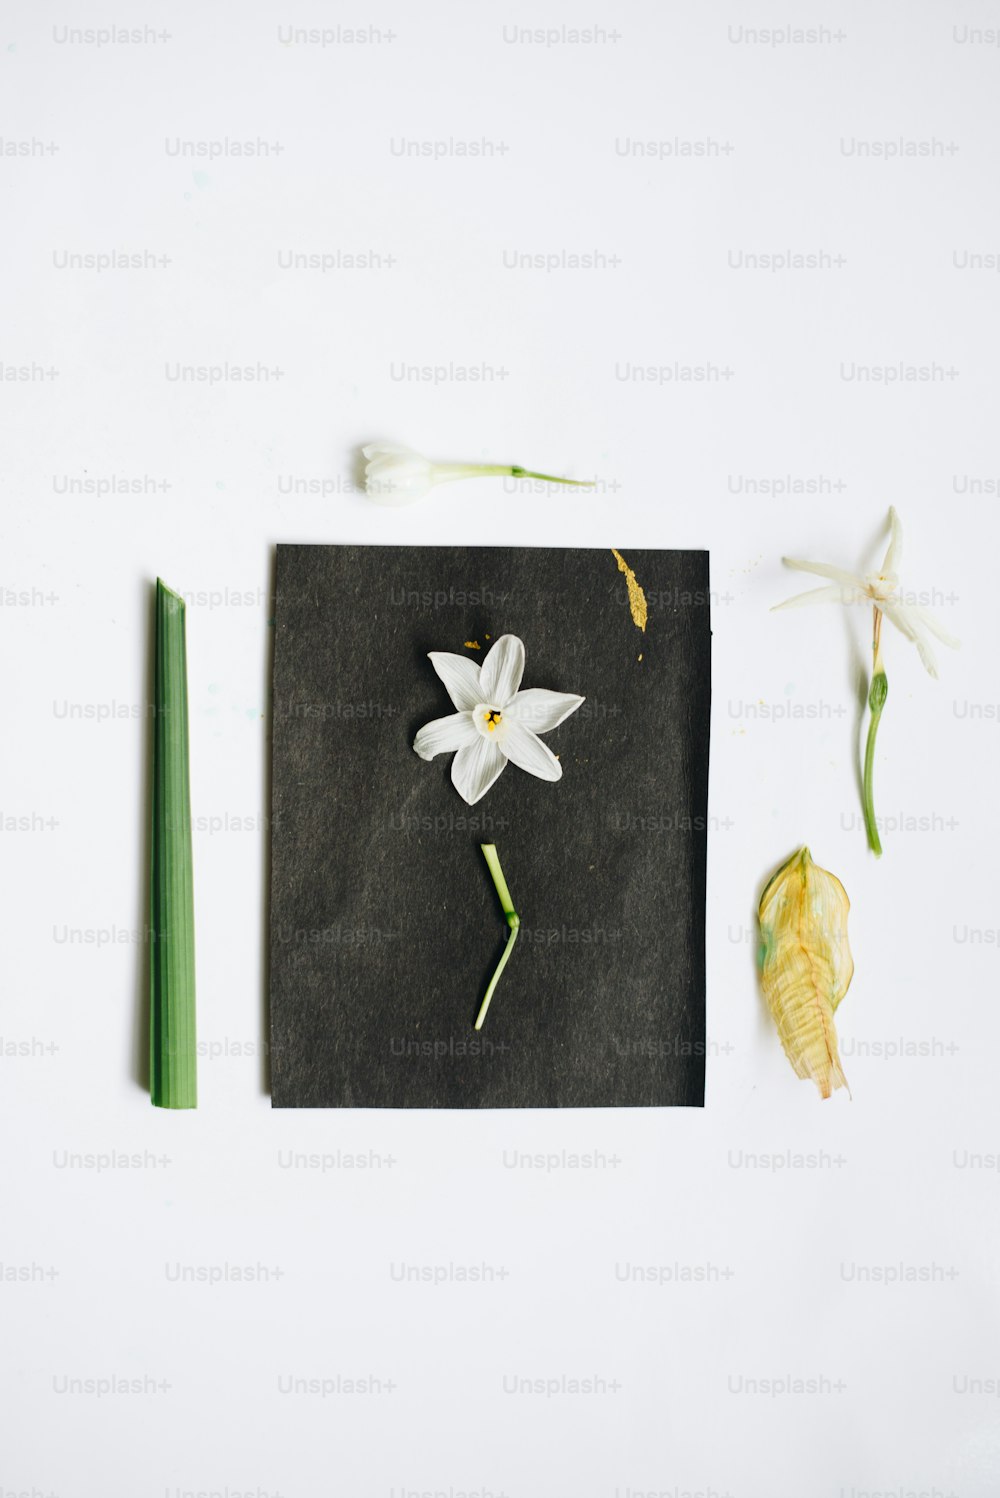 검은 종이 위에 하얀 꽃이 놓여 있다